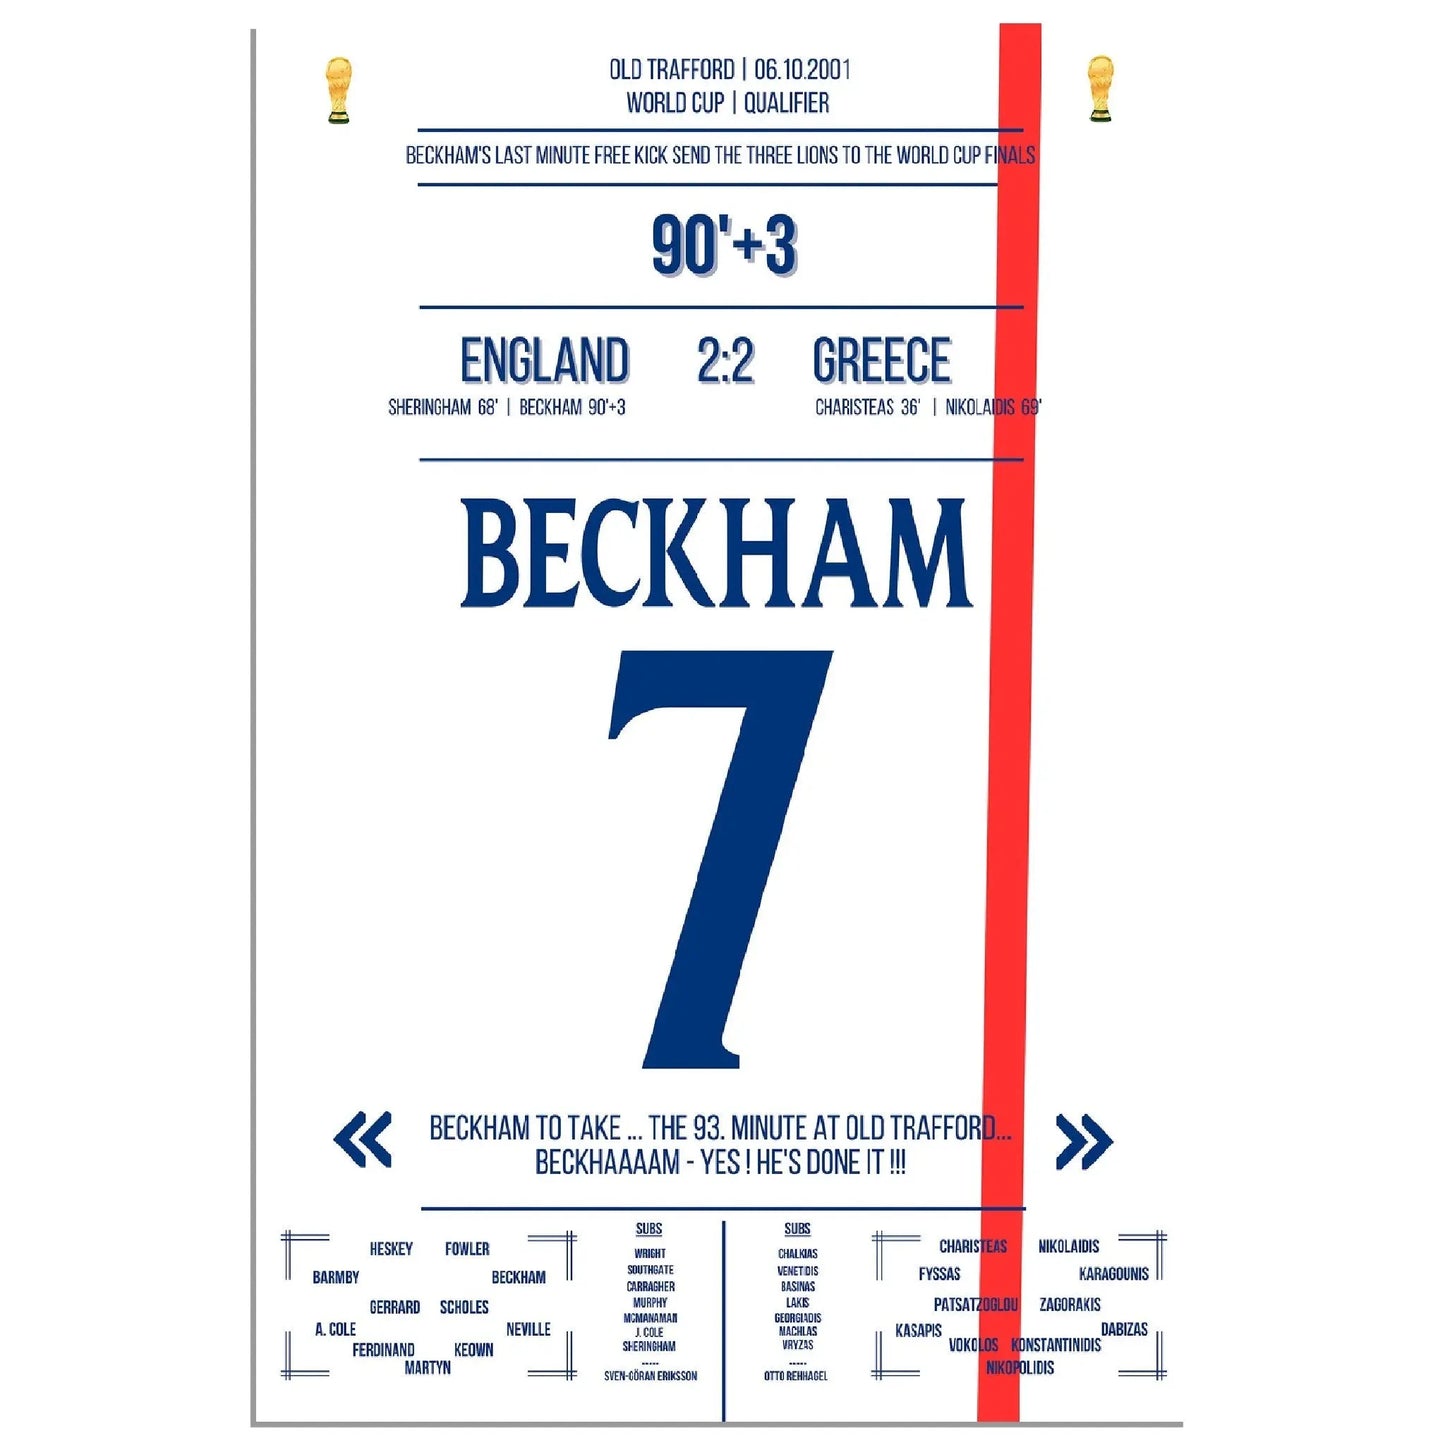 Beckhams Freistoss in letzter Minute - Qualifikation zur WM 2002 England - Griechenland 